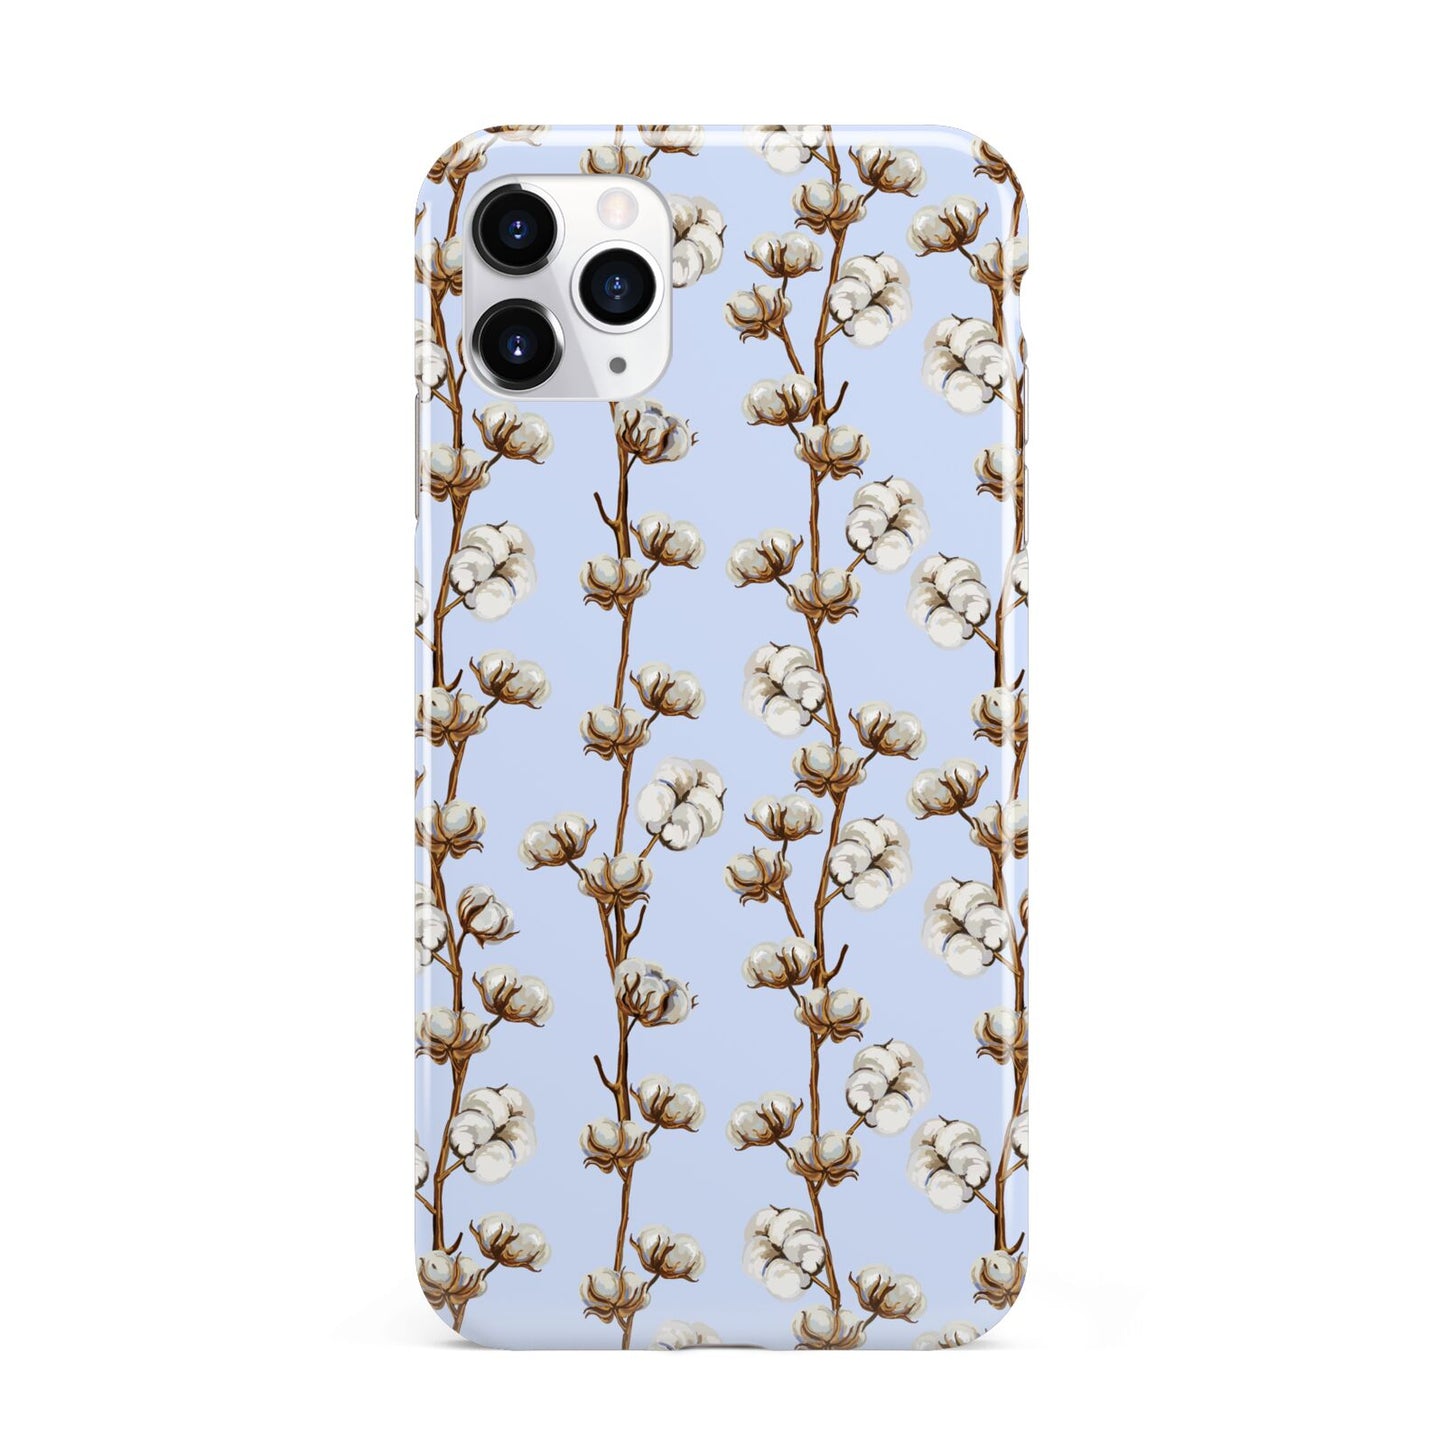 Cotton Branch iPhone 11 Pro Max 3D Tough Case